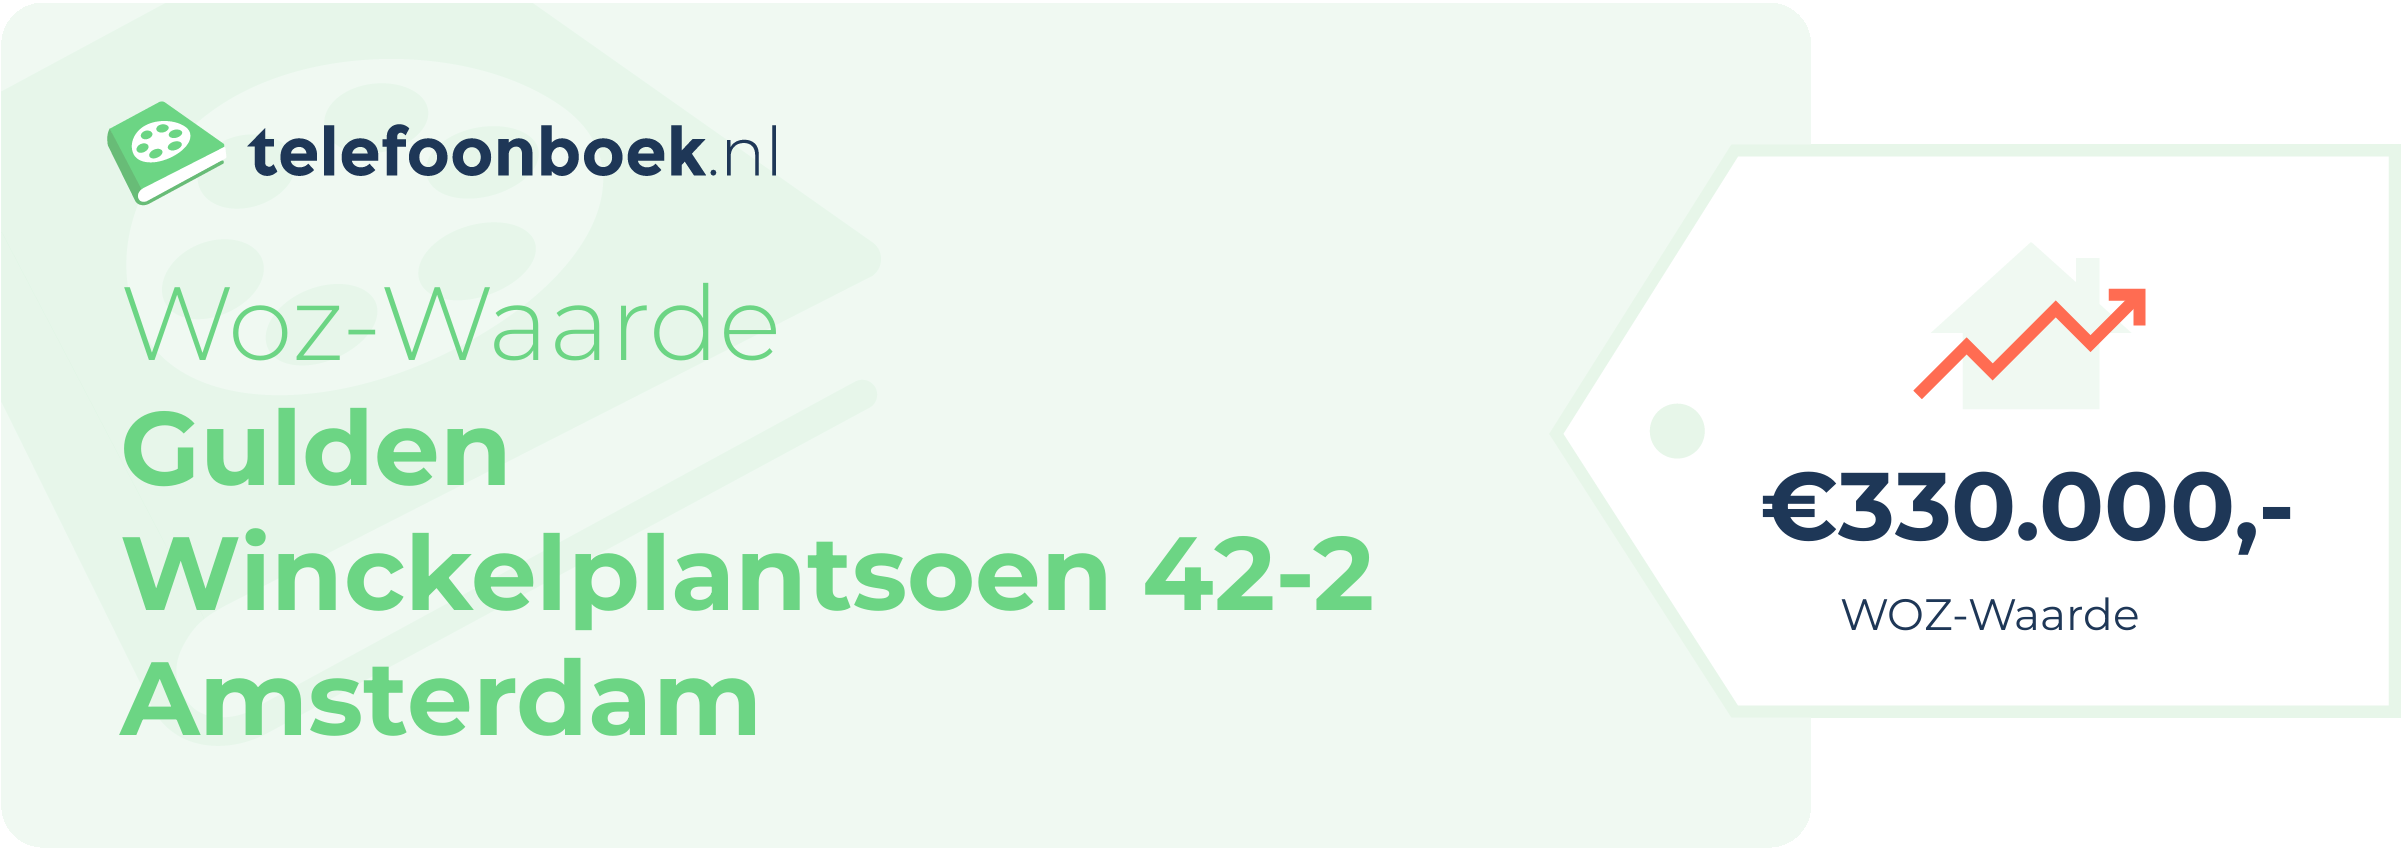 WOZ-waarde Gulden Winckelplantsoen 42-2 Amsterdam